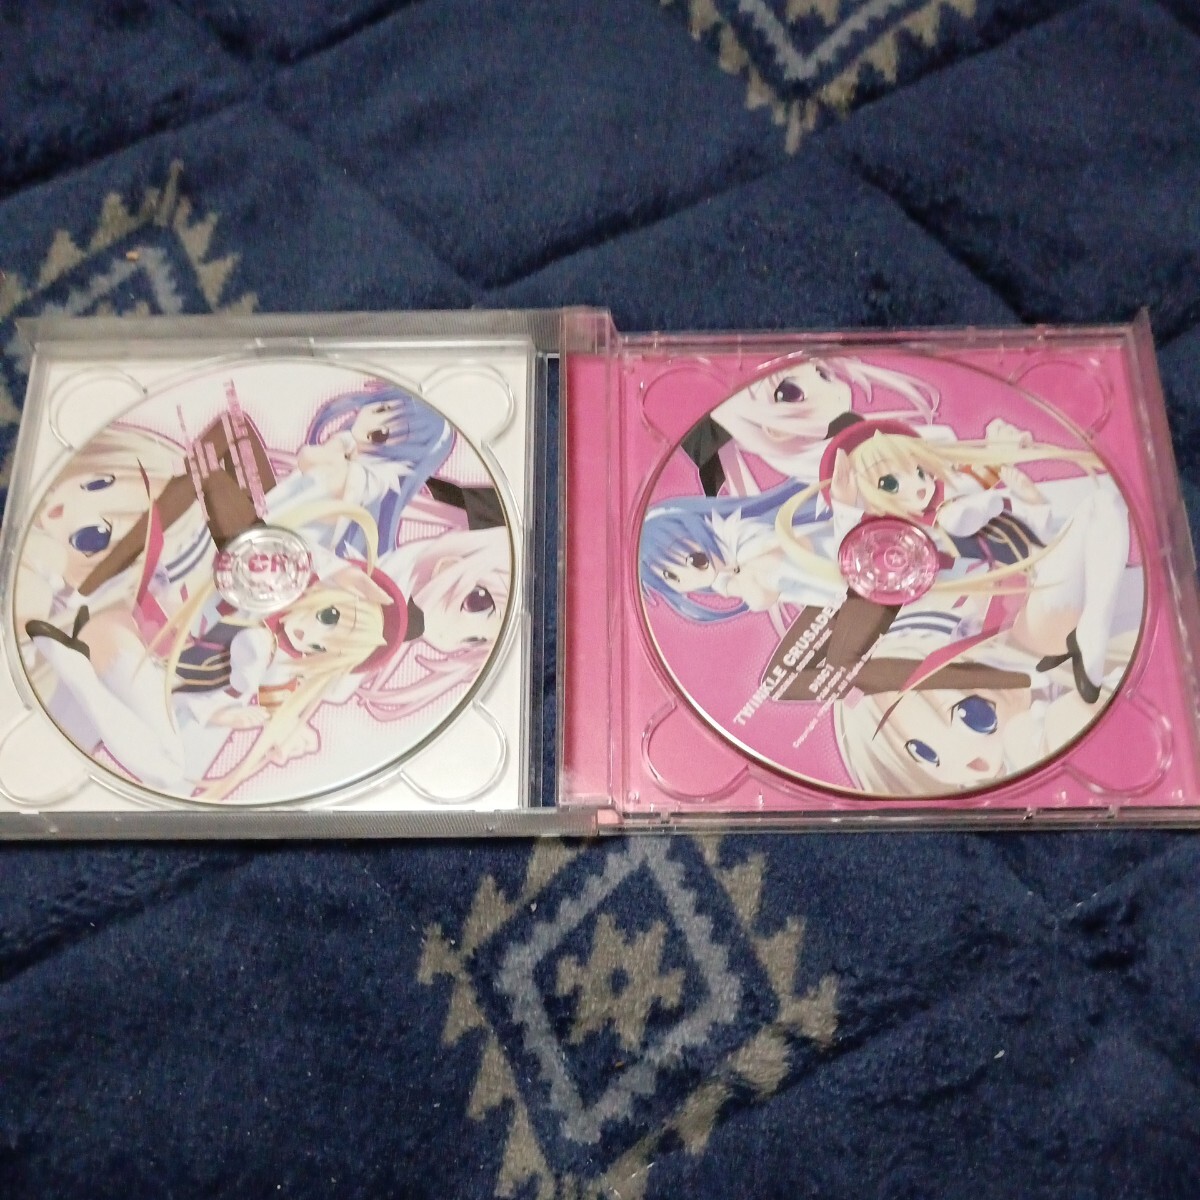 ティンクル☆くるせいだーす ORIGINAL SOUND TRACK オリジナル サウンドトラック CD_画像3